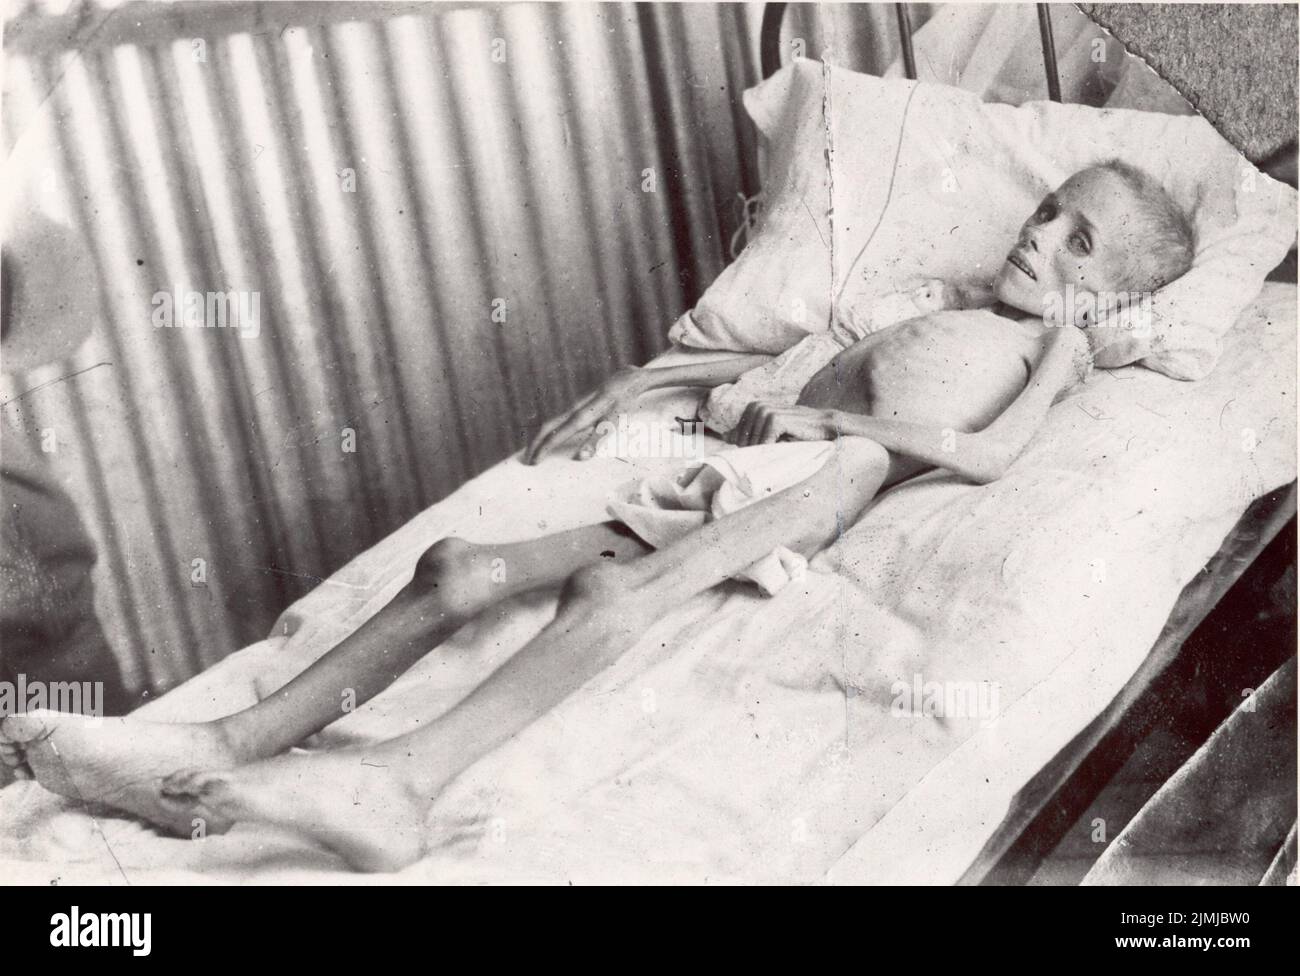 Lizzie van Zyl, ein hungerndes Kind der Boer, besuchte Emily Hobhouse in einem britischen Konzentrationslager Stockfoto